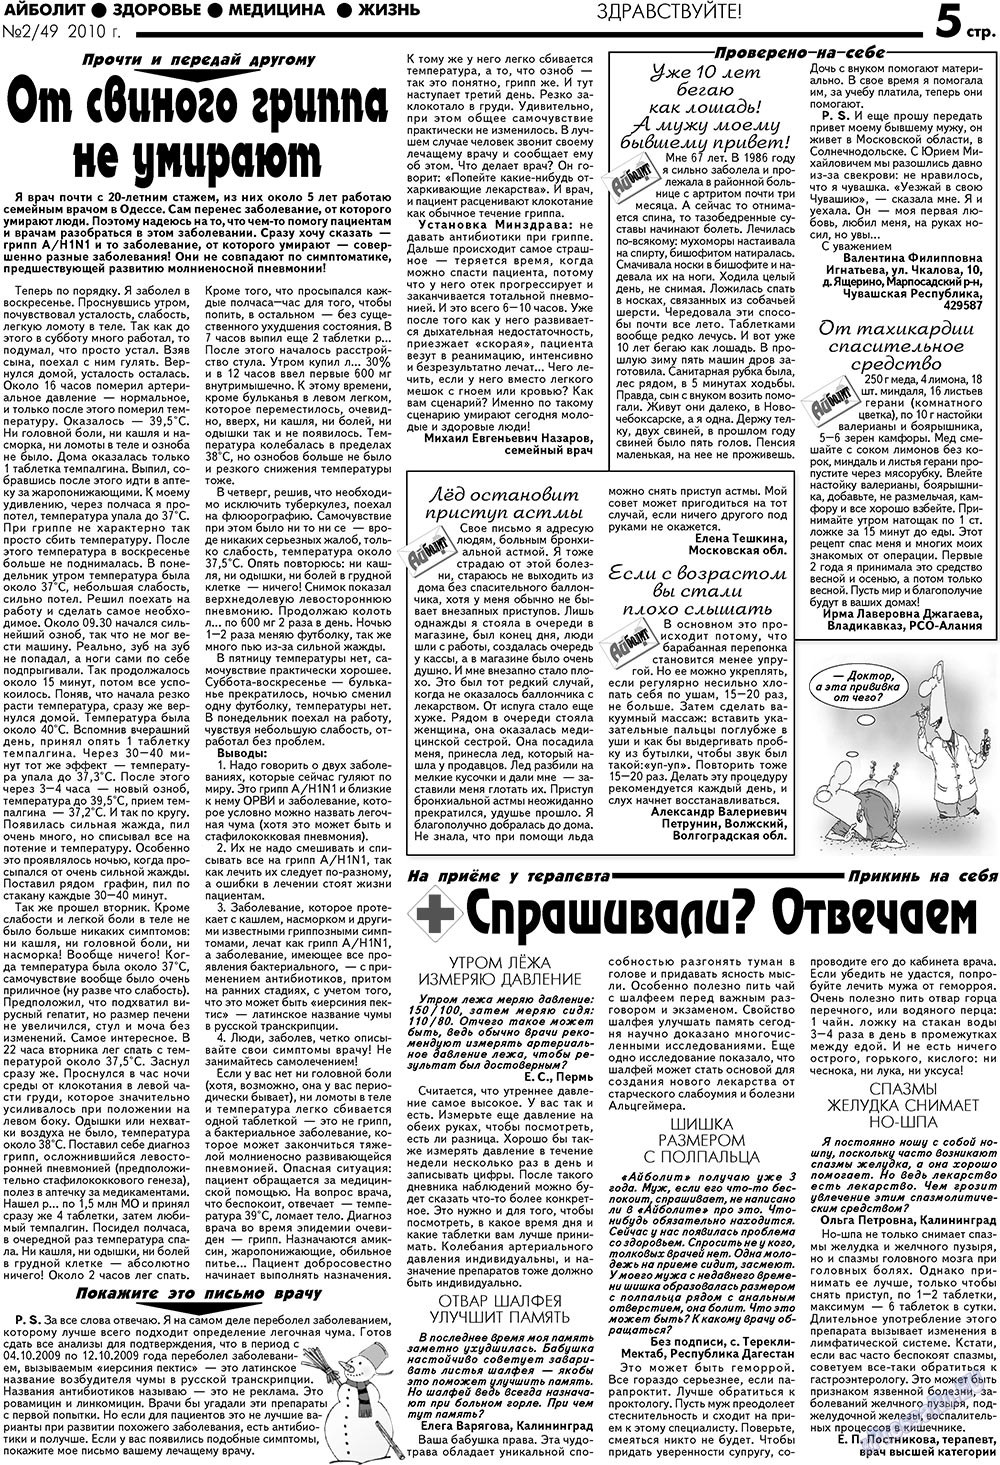 АйБолит, газета. 2010 №2 стр.5